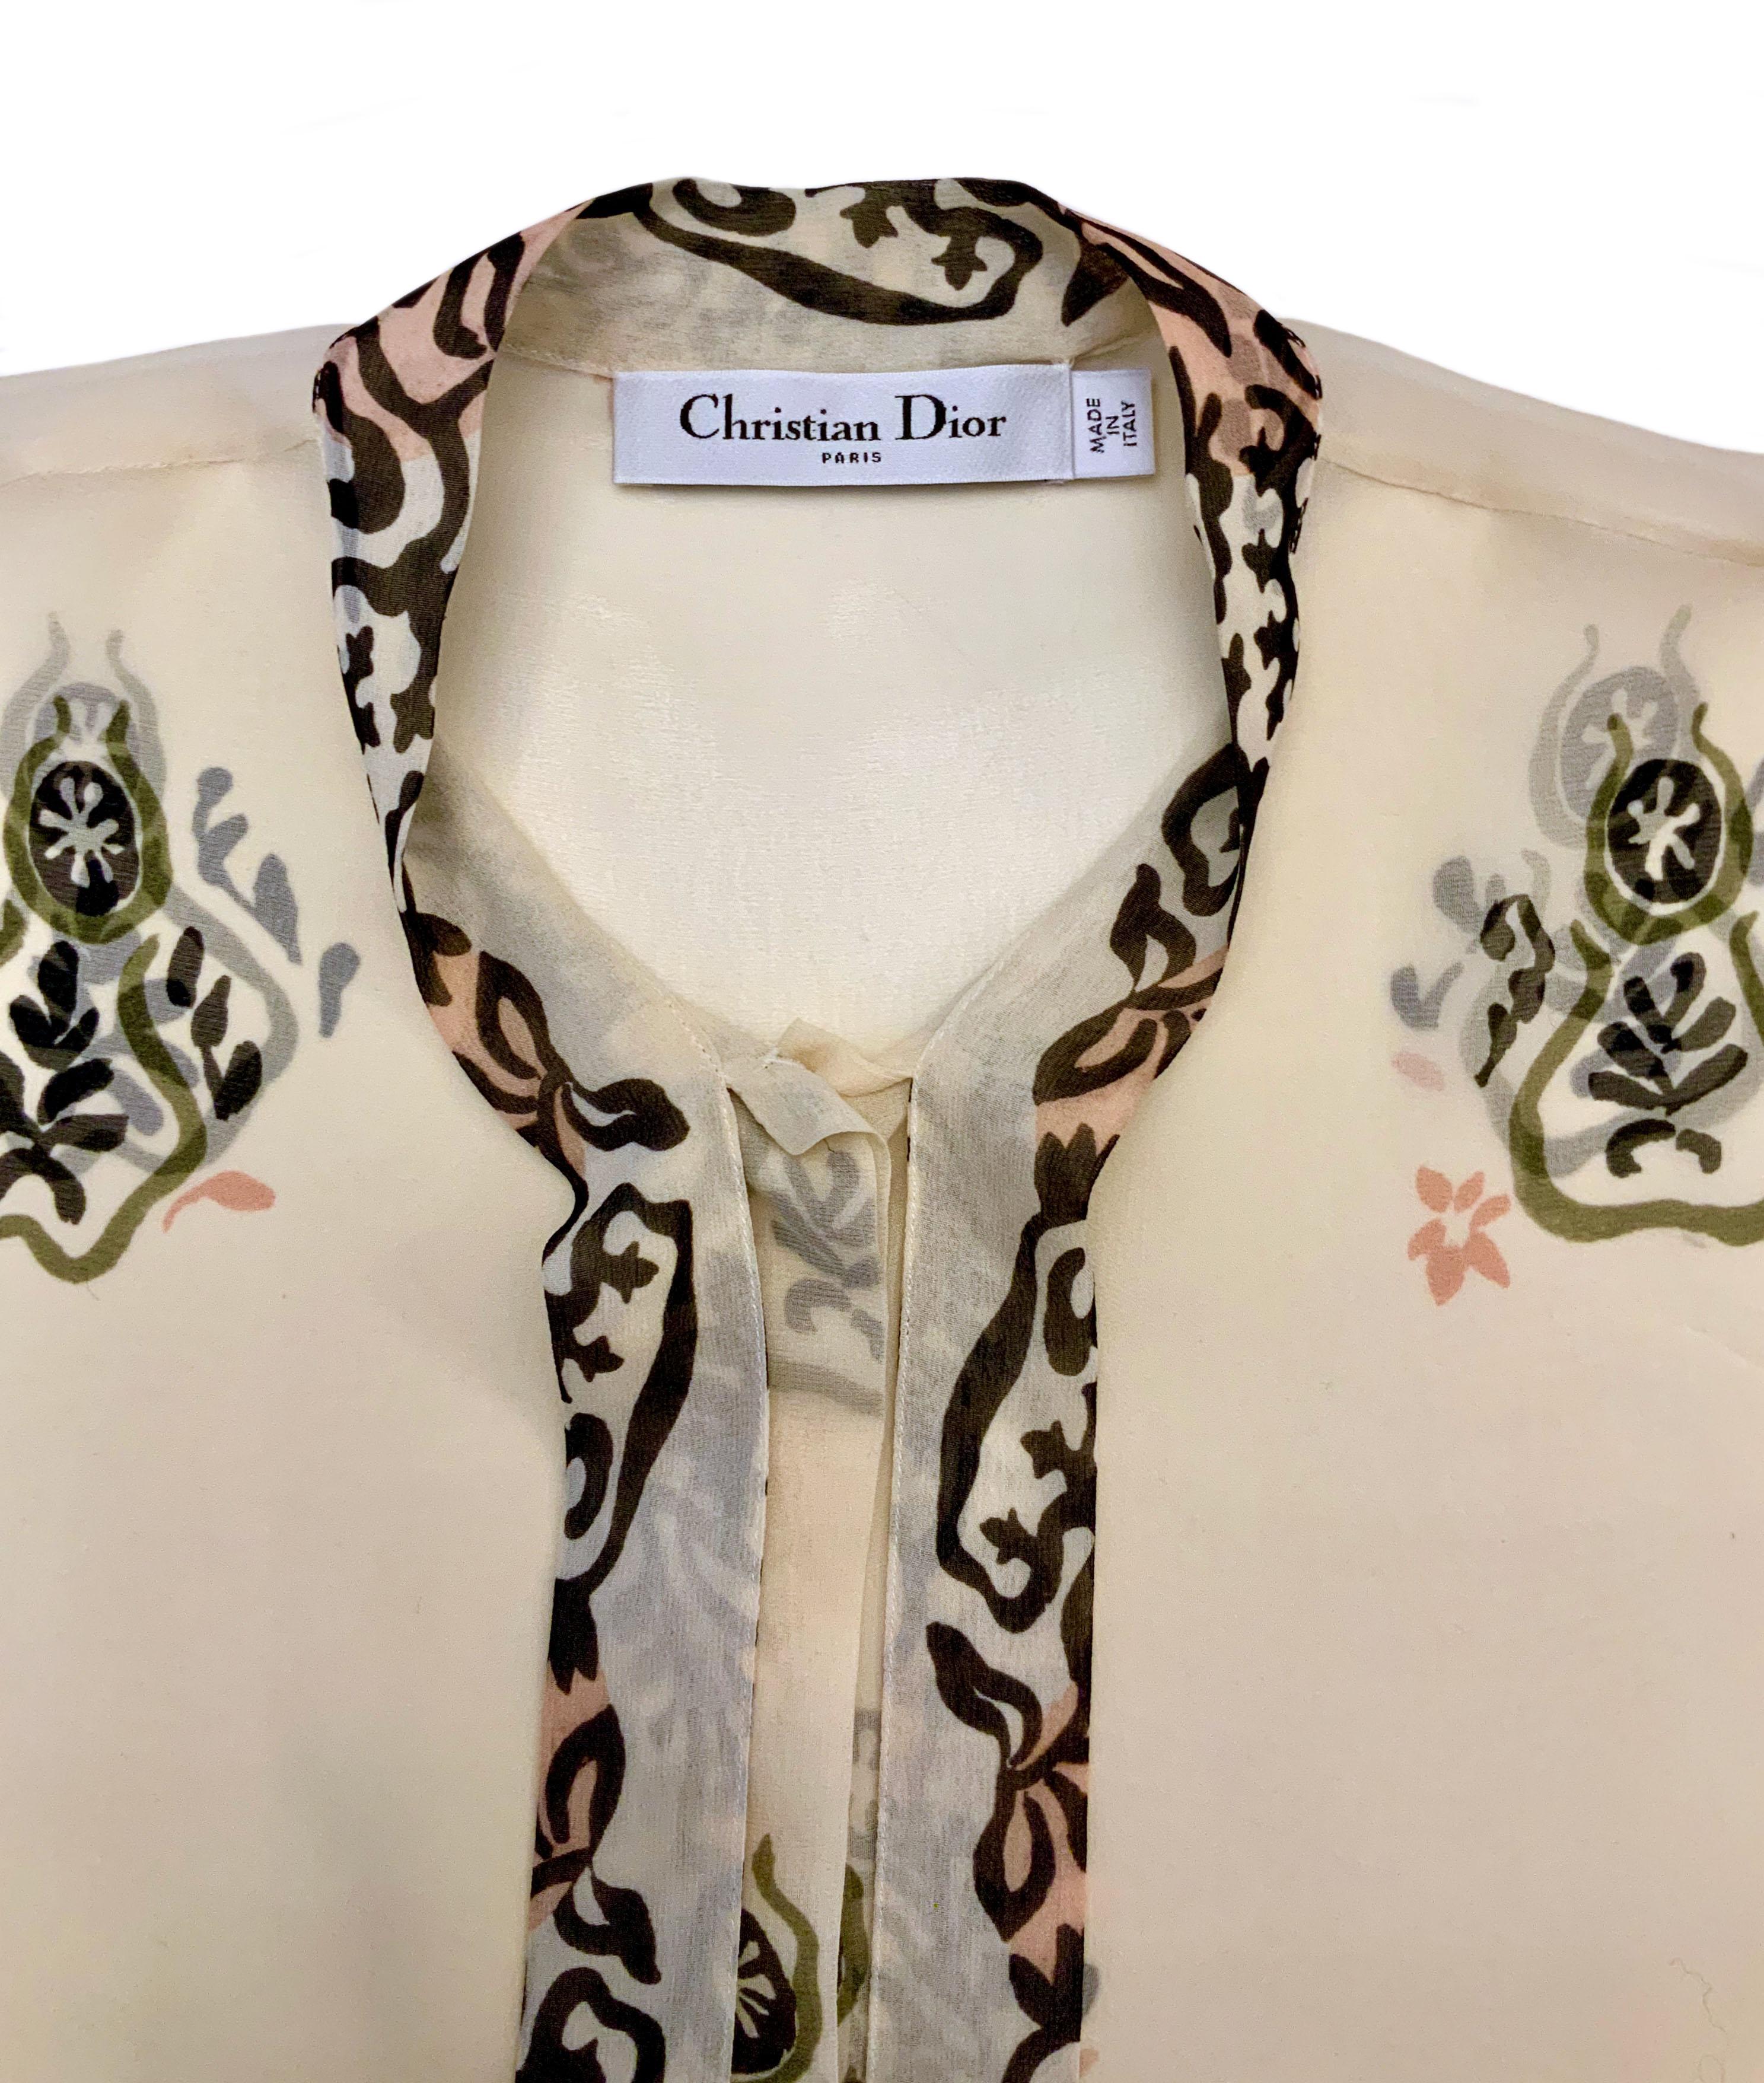 Diese vom Navajo-Muster inspirierte Bluse aus reiner Seide in einem zarten Cremeton ist Teil der Pre Fall 2019 Kollektion.
Es kann mit der passenden Strickjacke oder einfach alleine getragen werden!
Lange Ärmel und